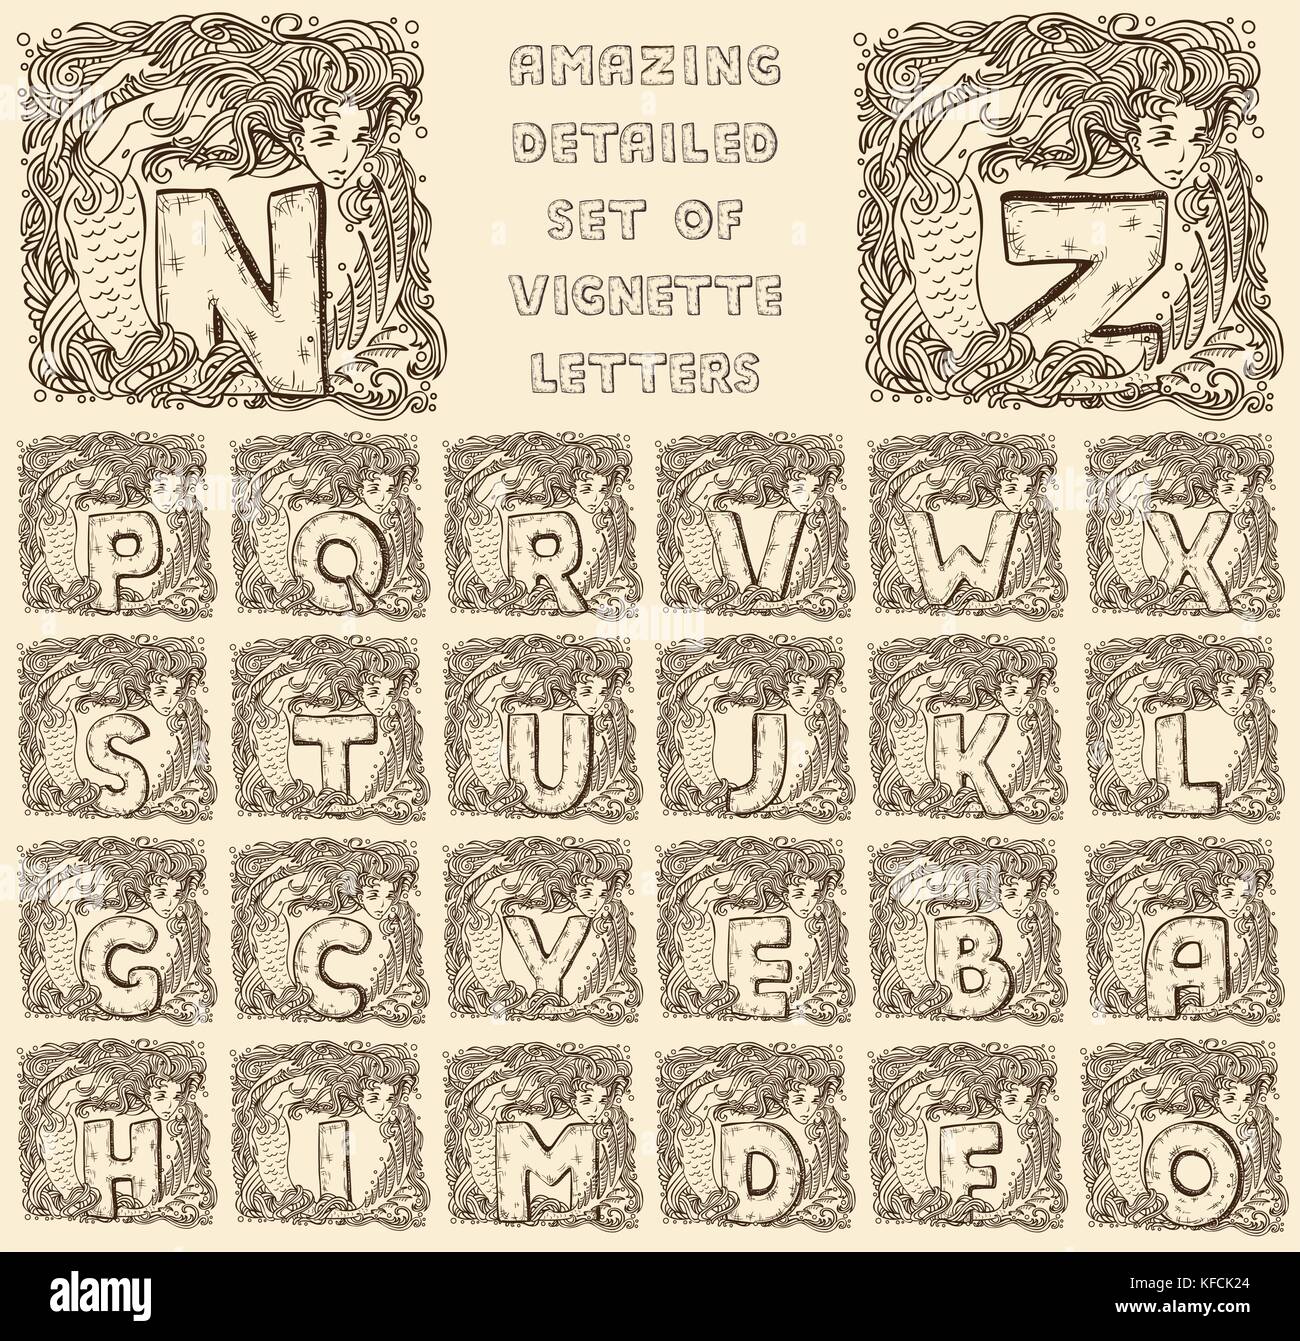 Alphabet de la marine vintage - lettres gravées en vignettes de sirènes - ensemble complet, prêt à l'emploi Illustration de Vecteur